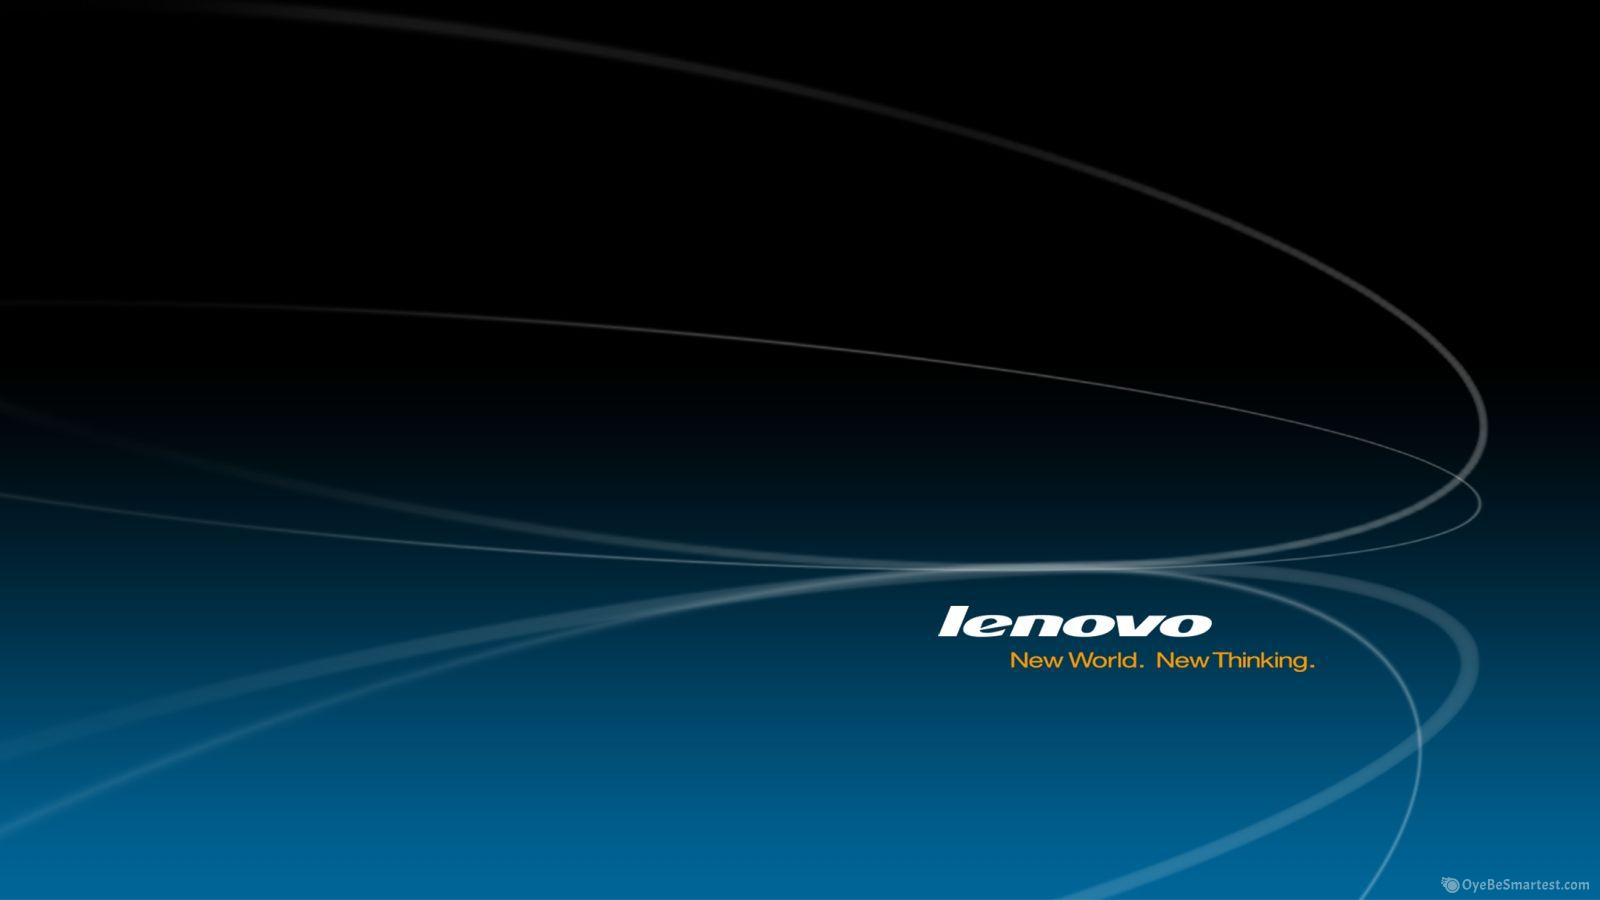 Lenovo Wallpaper 82 images